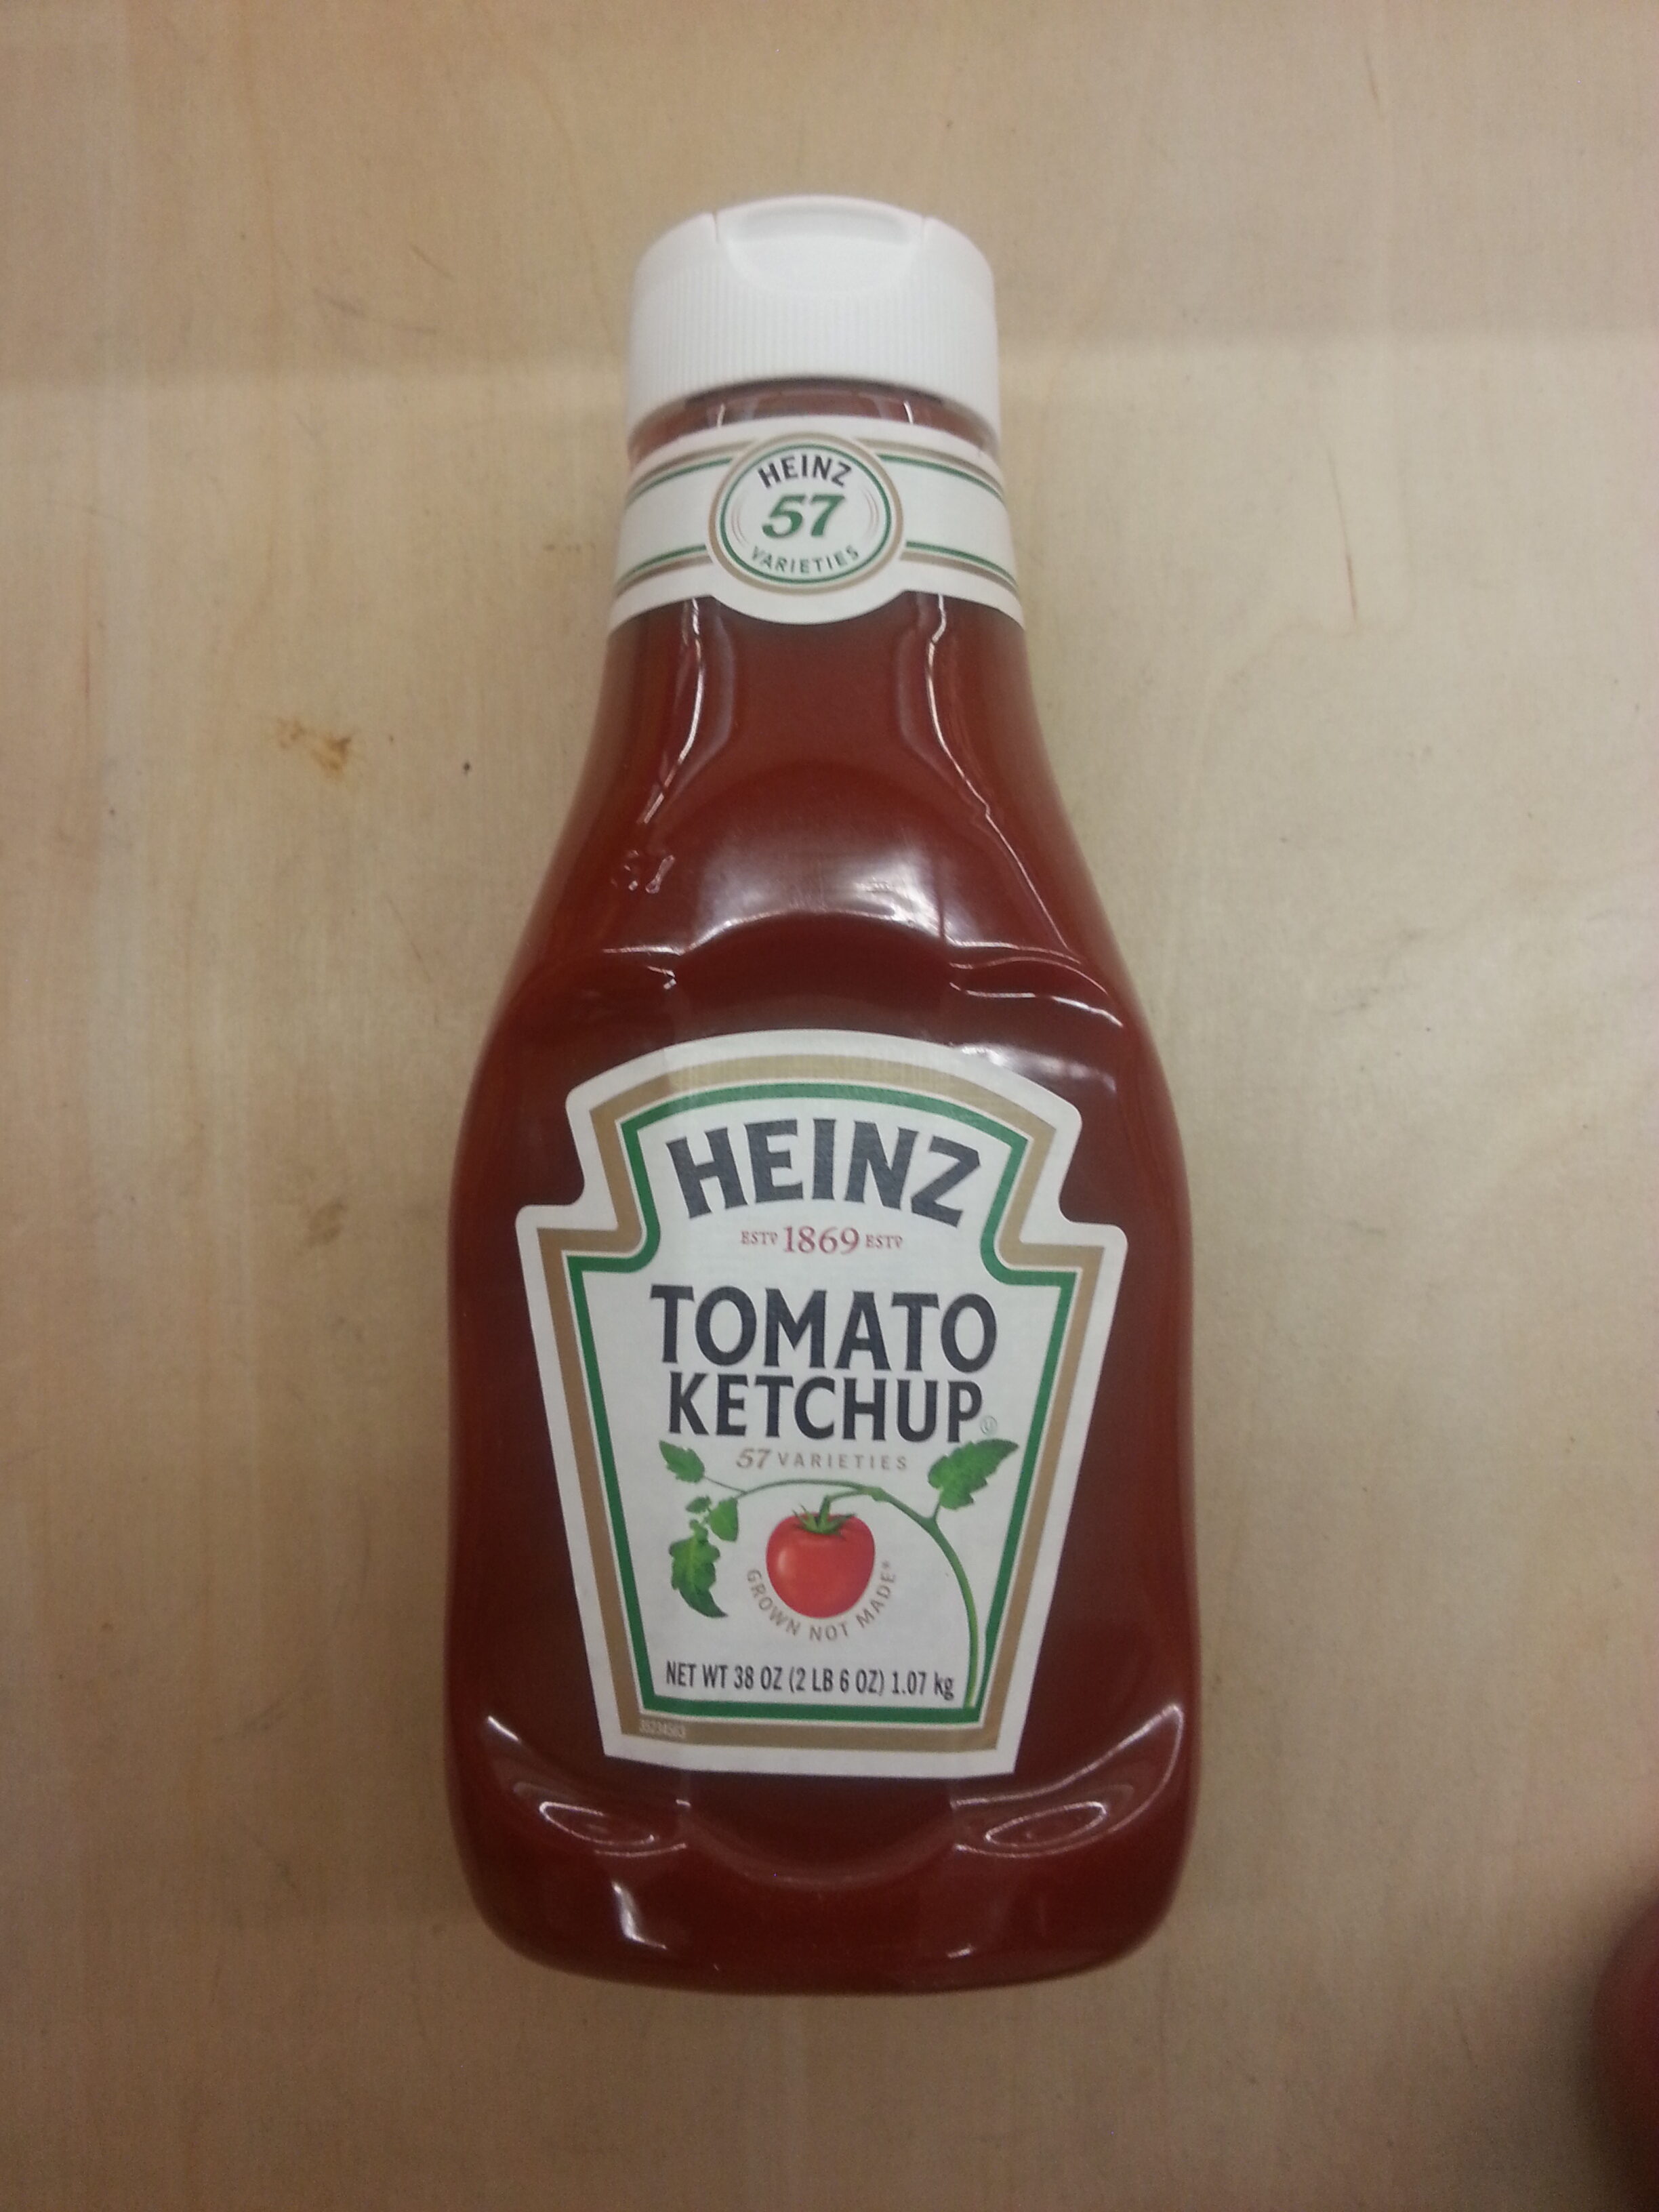 Tomato ketchup, tomato - Producto - en